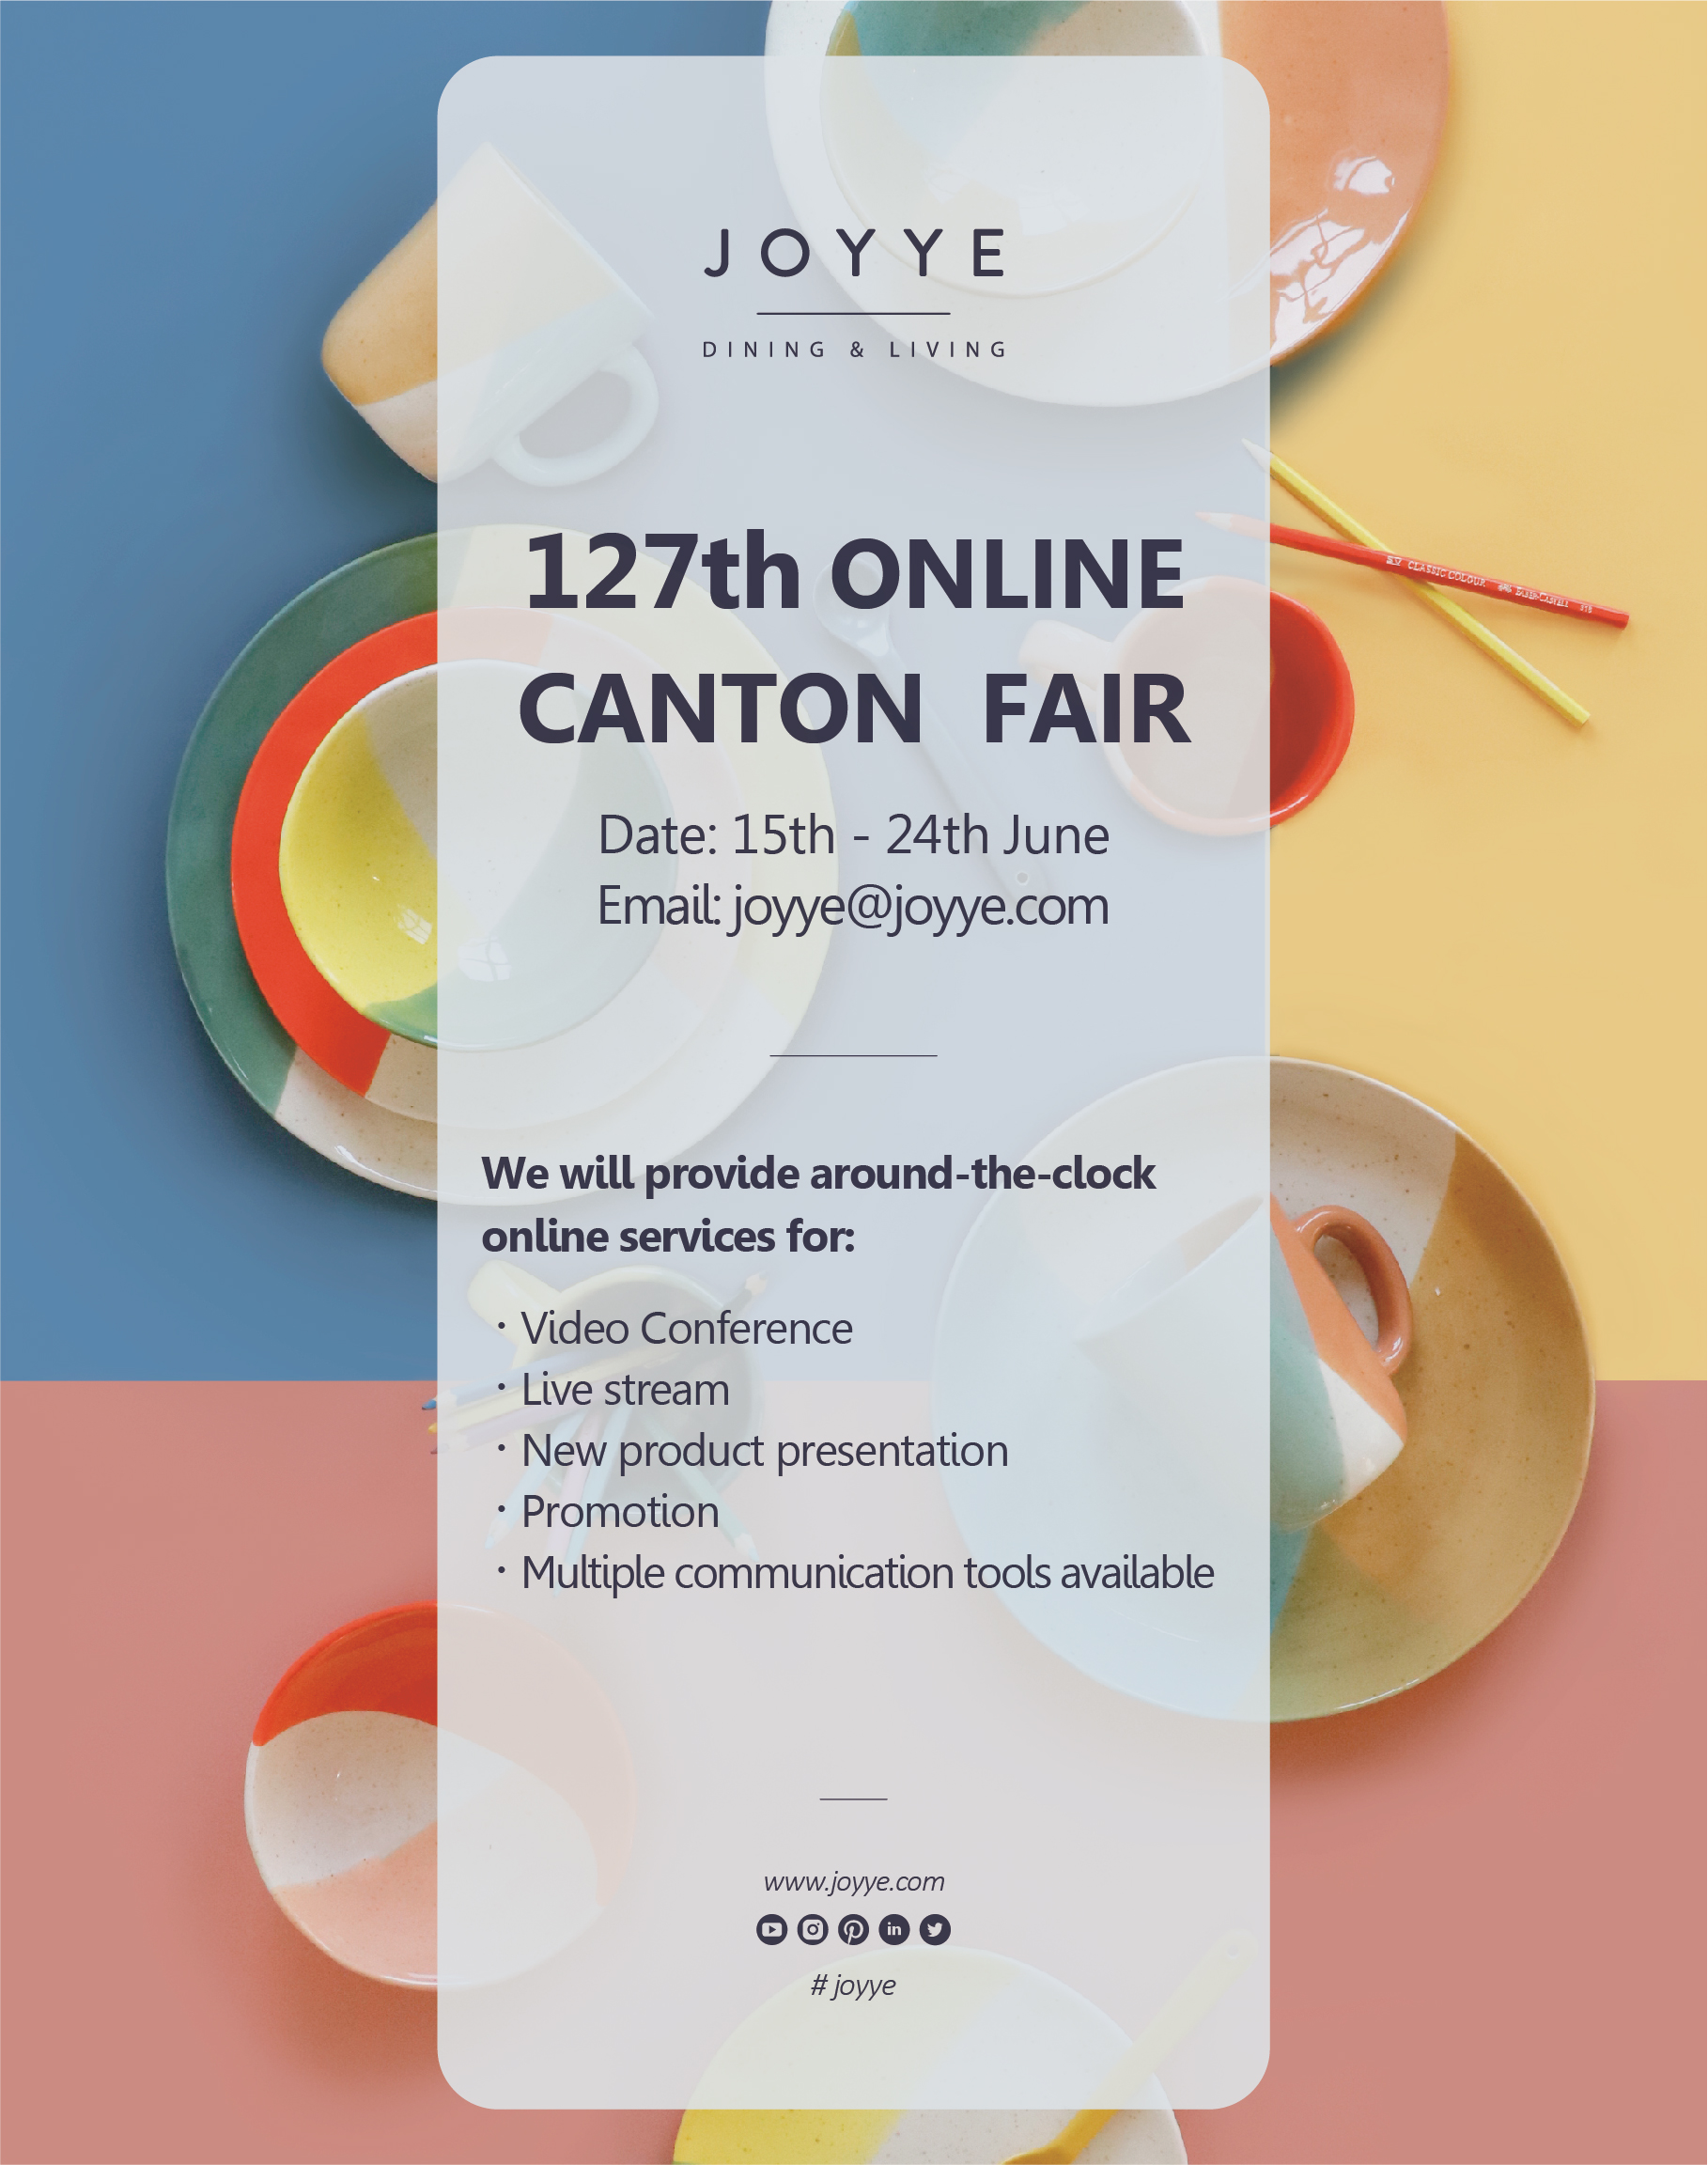 JOYYE Online Canton Fair